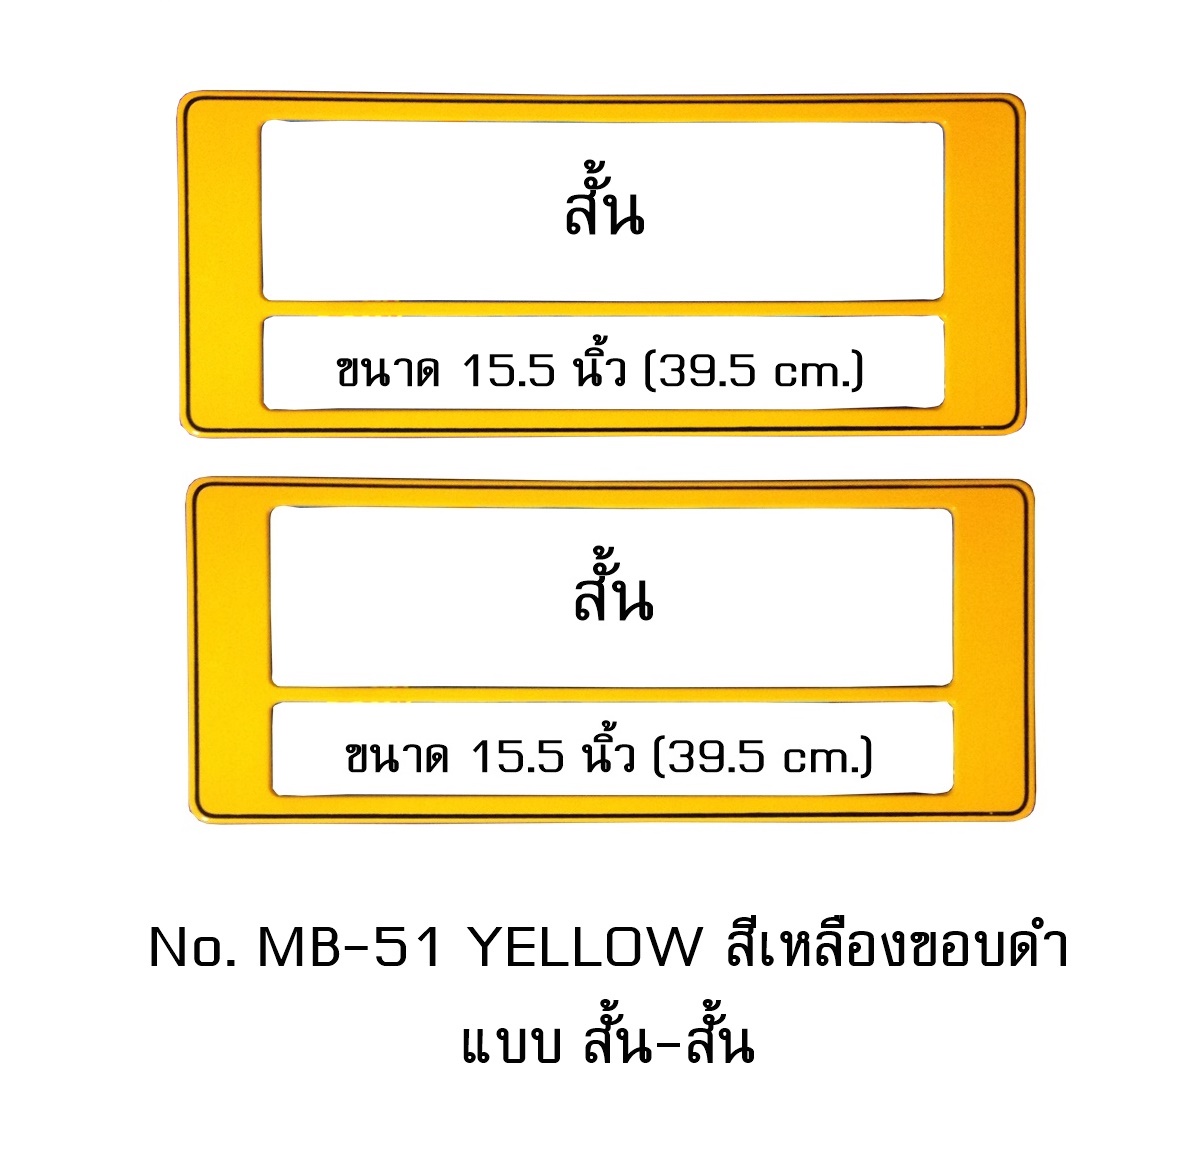 กรอบป้ายทะเบียนรถยนต์ กันน้ำ MB-51 สีเหลือง ขอบดำ แบบสั้น-สั้น ระบบคลิปล็อค 8 จุด พร้อมน็อตอะไหล่